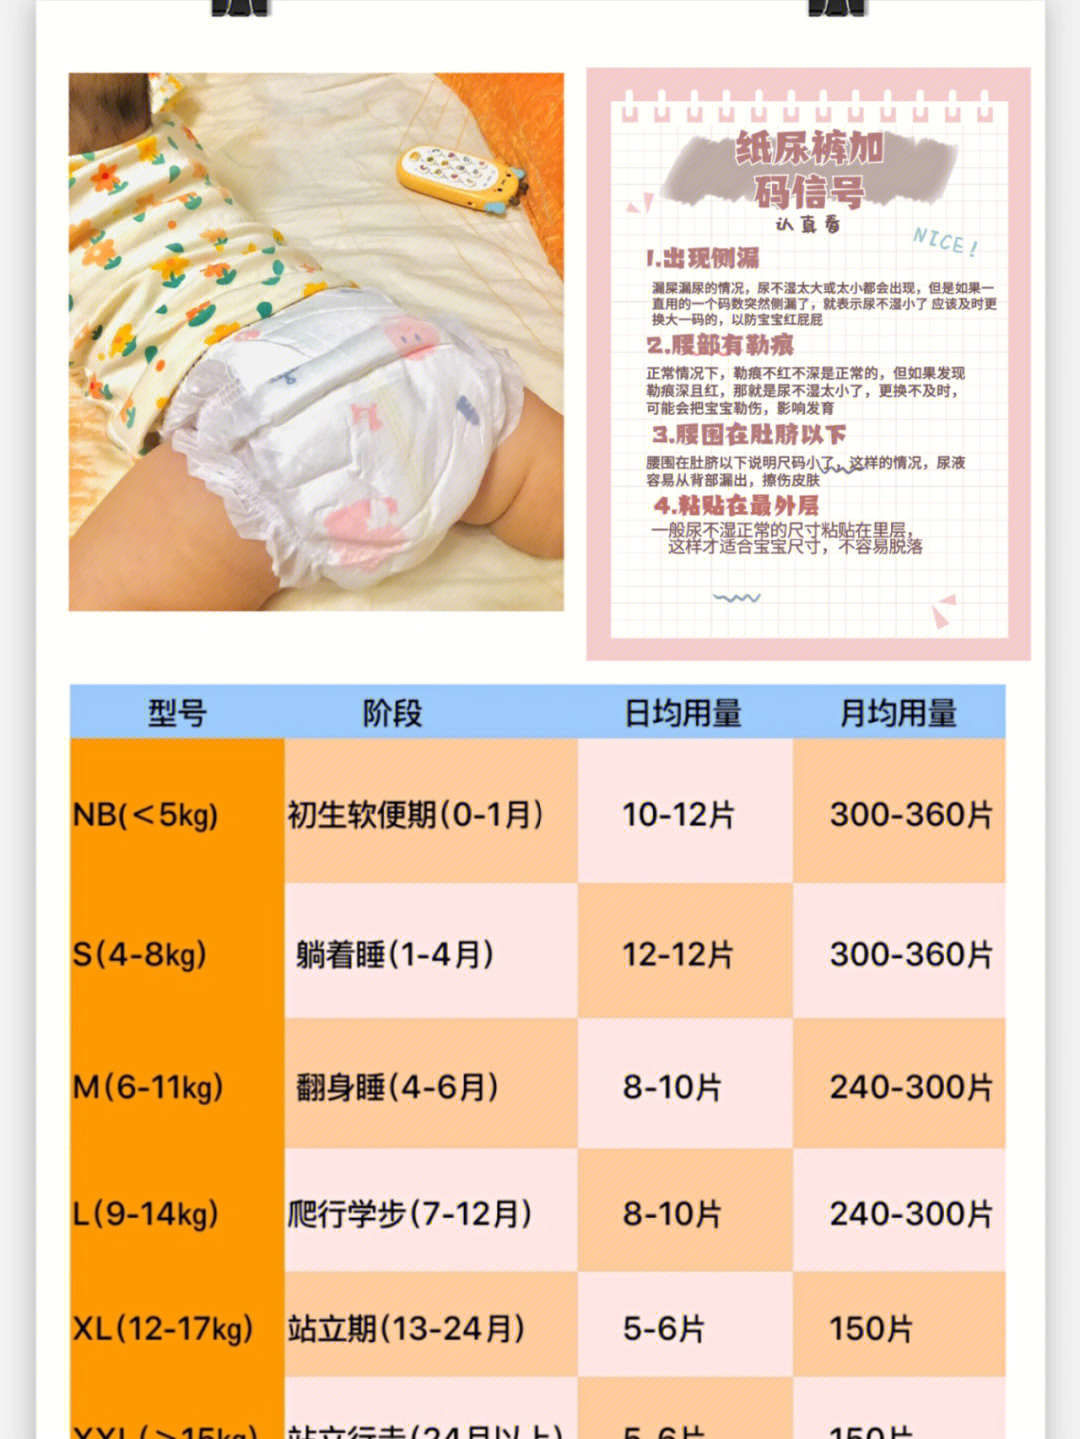 宝宝纸尿裤用量对照表图片